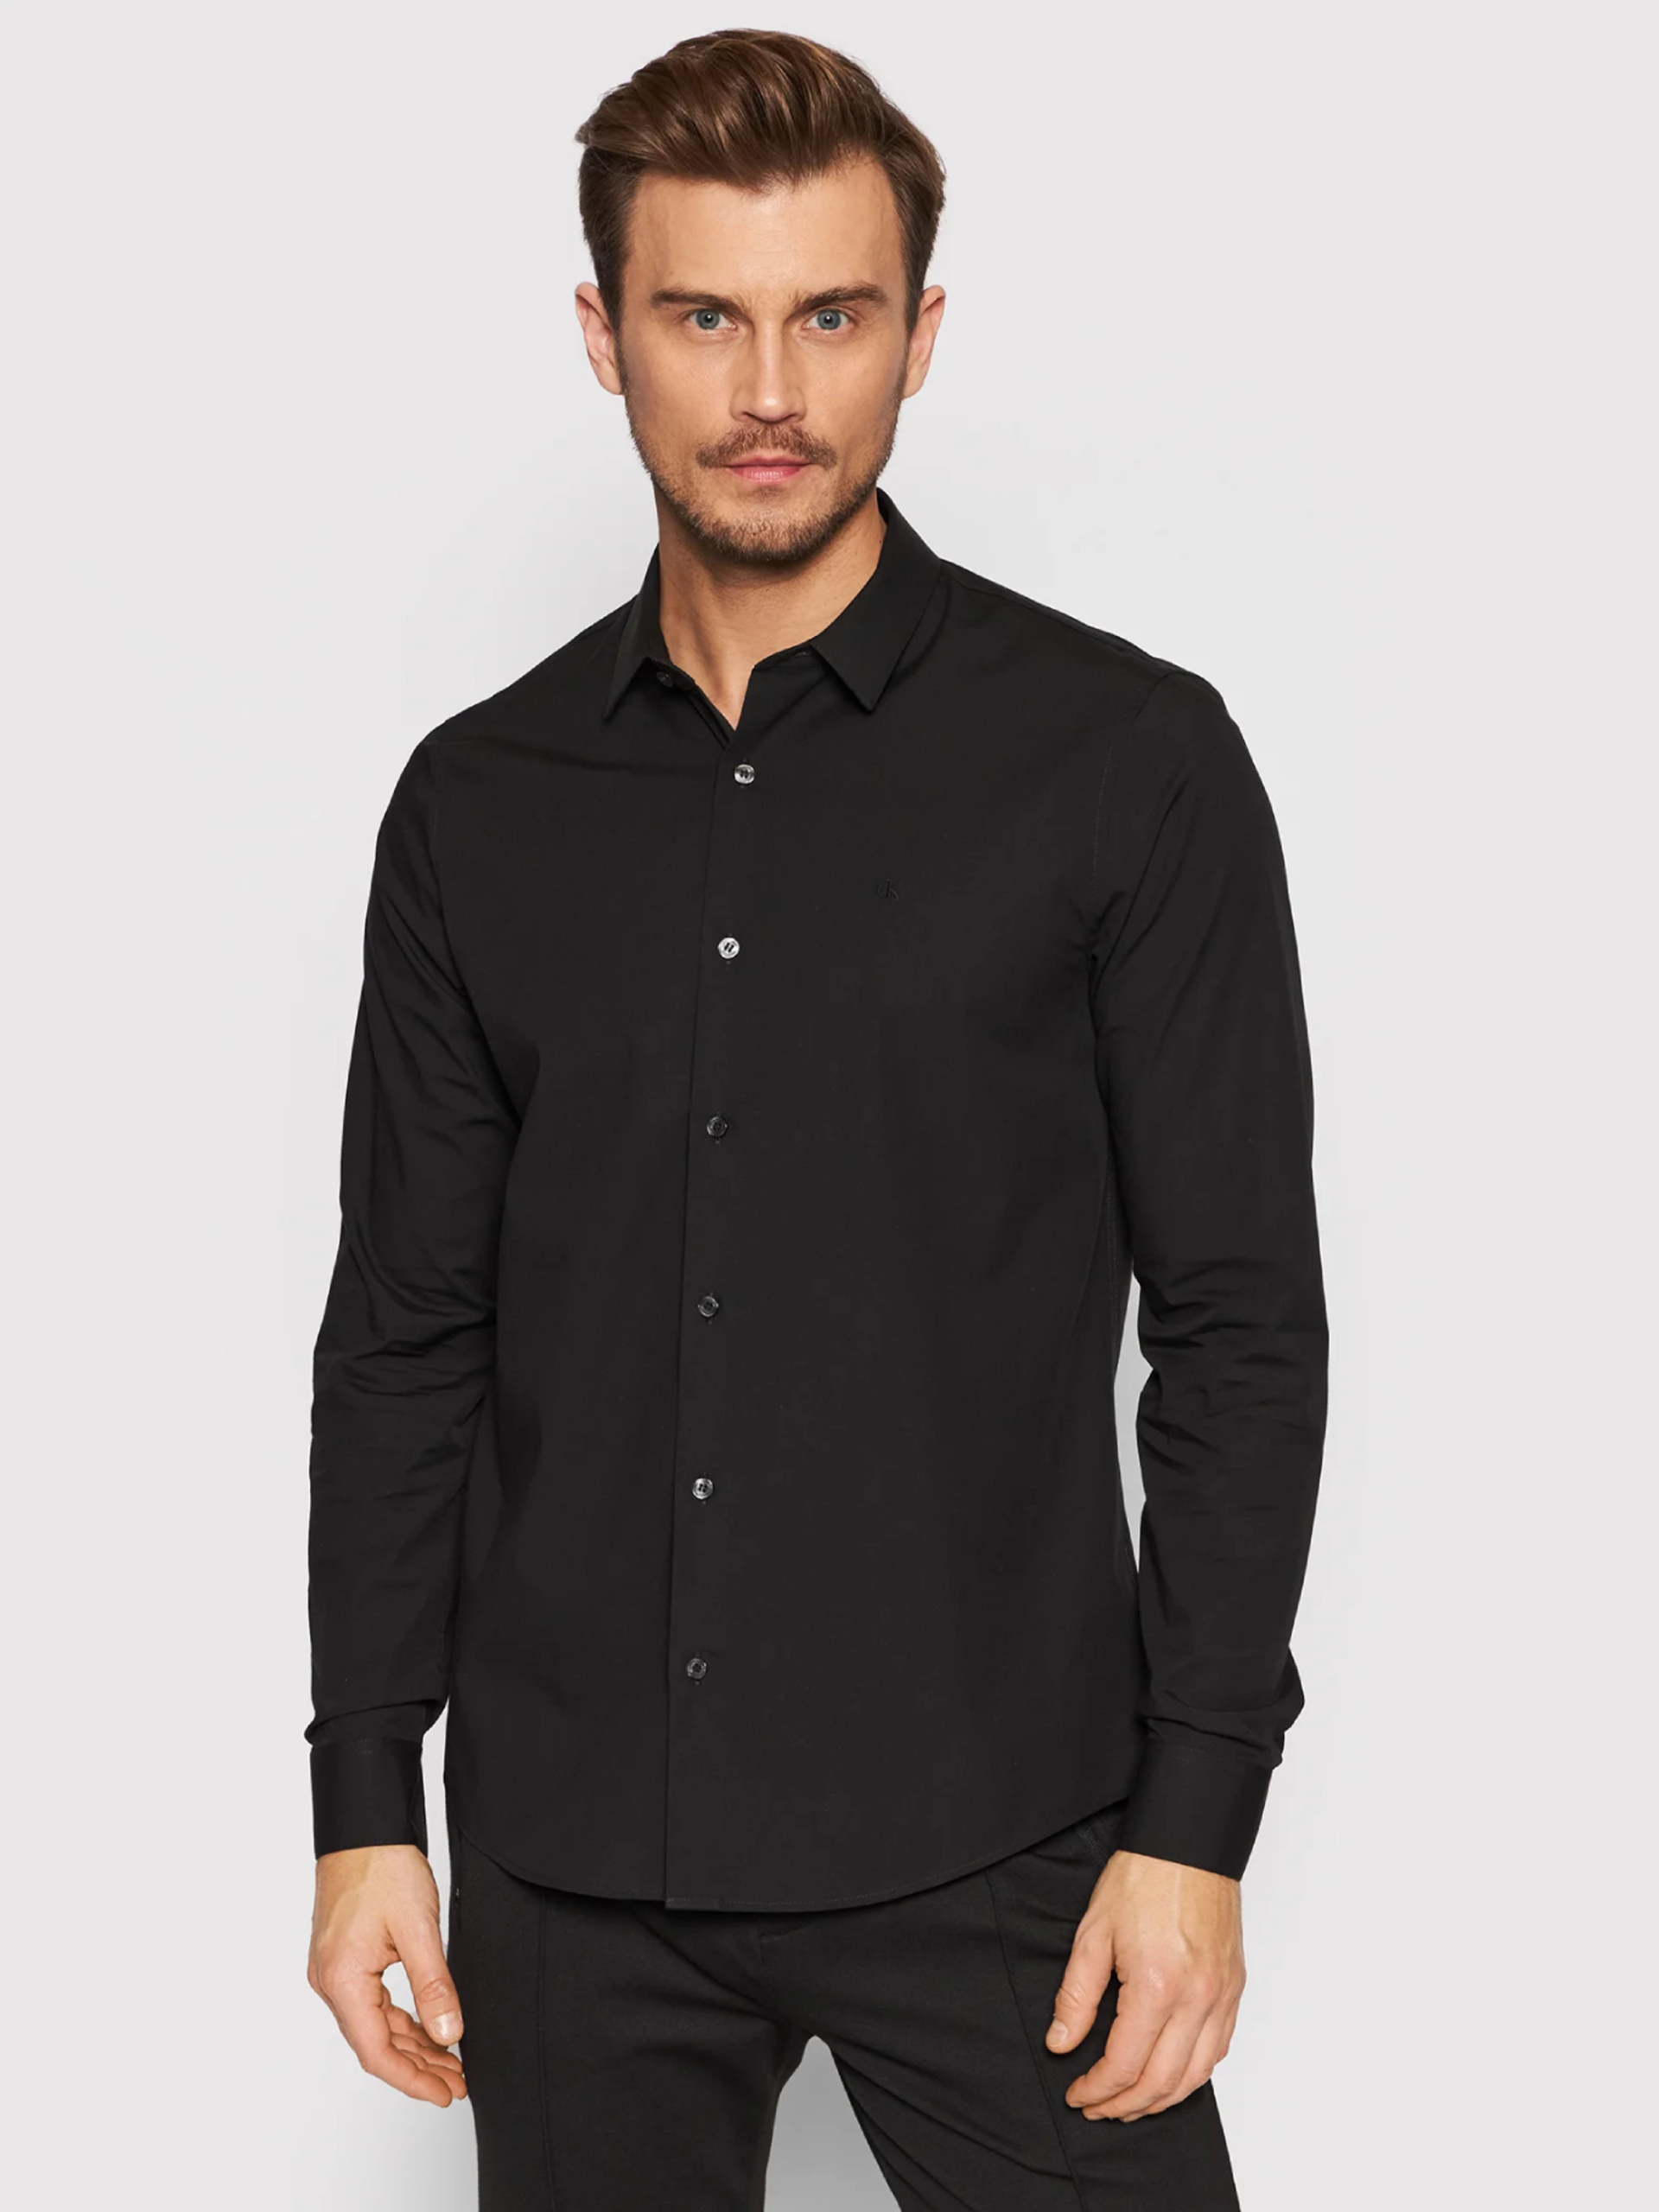 Calvin Klein pánská černá košile - L (BEH)